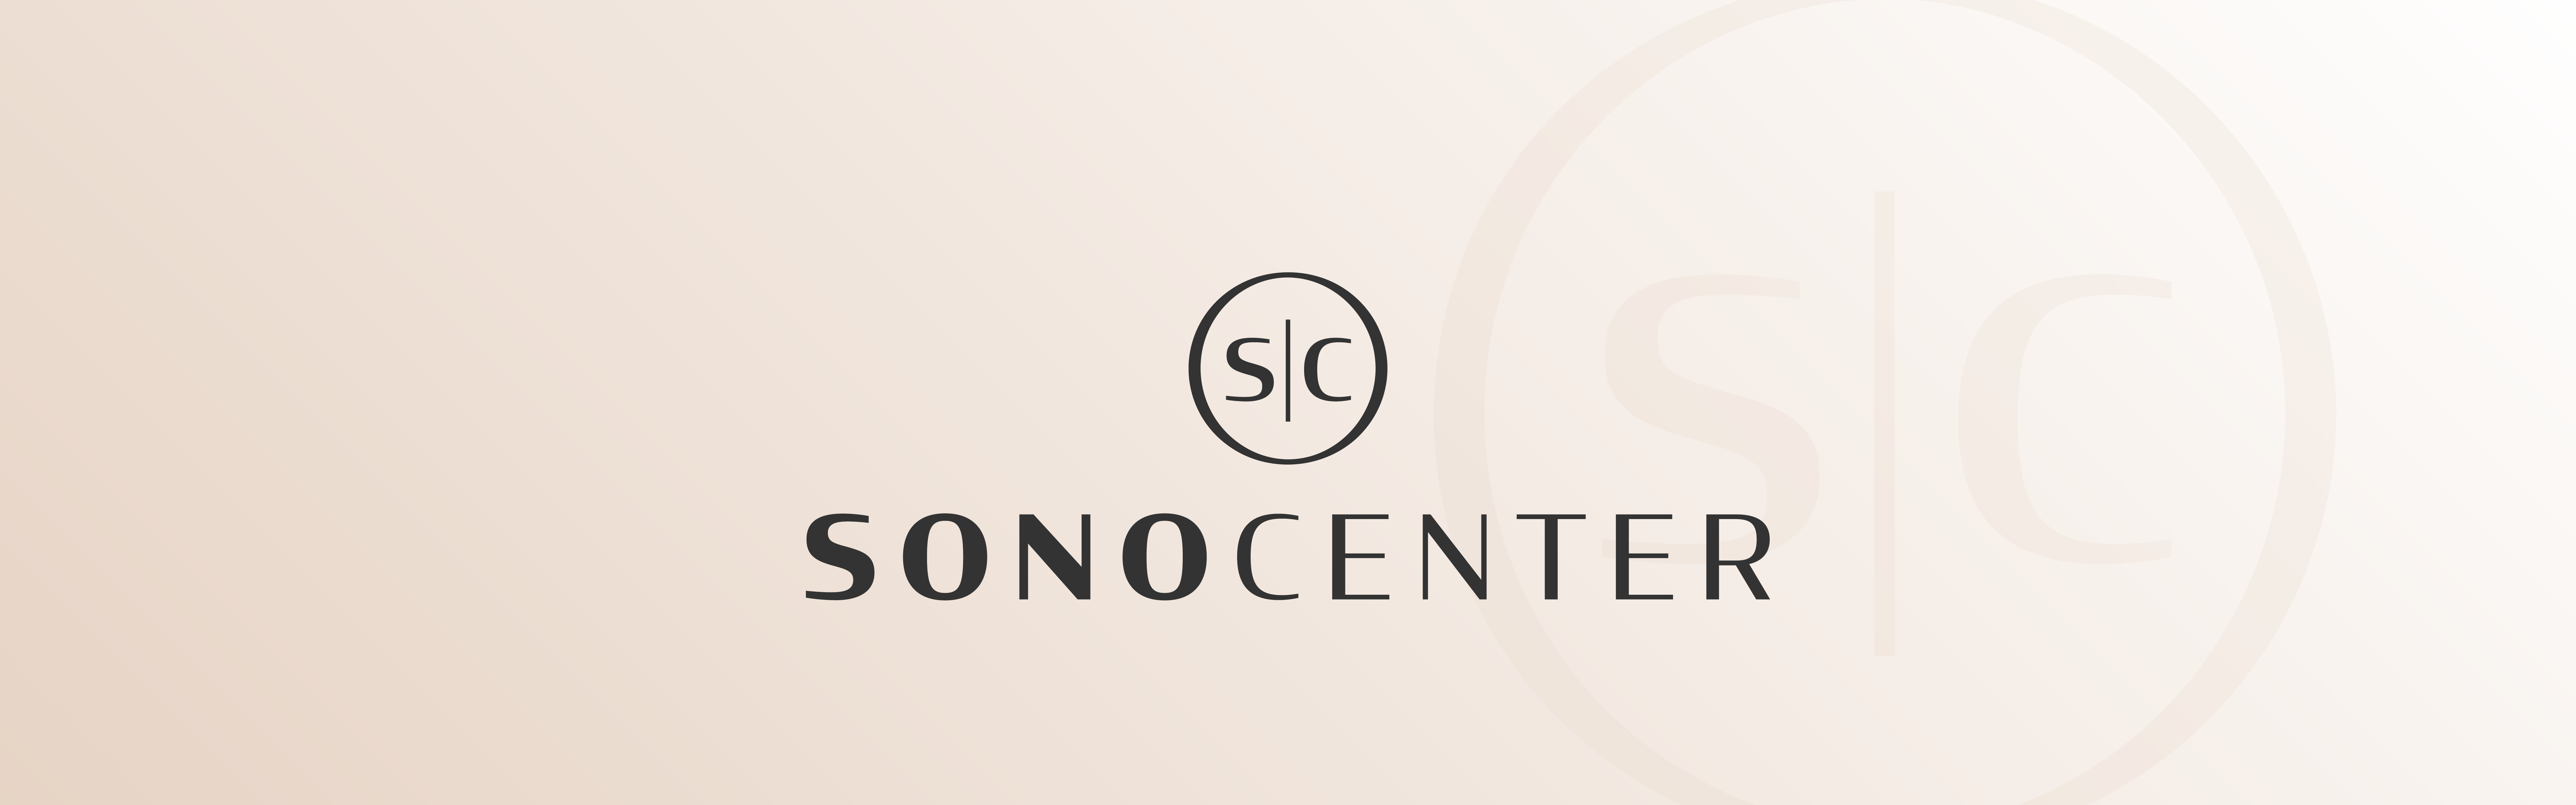 Sono Center logo design